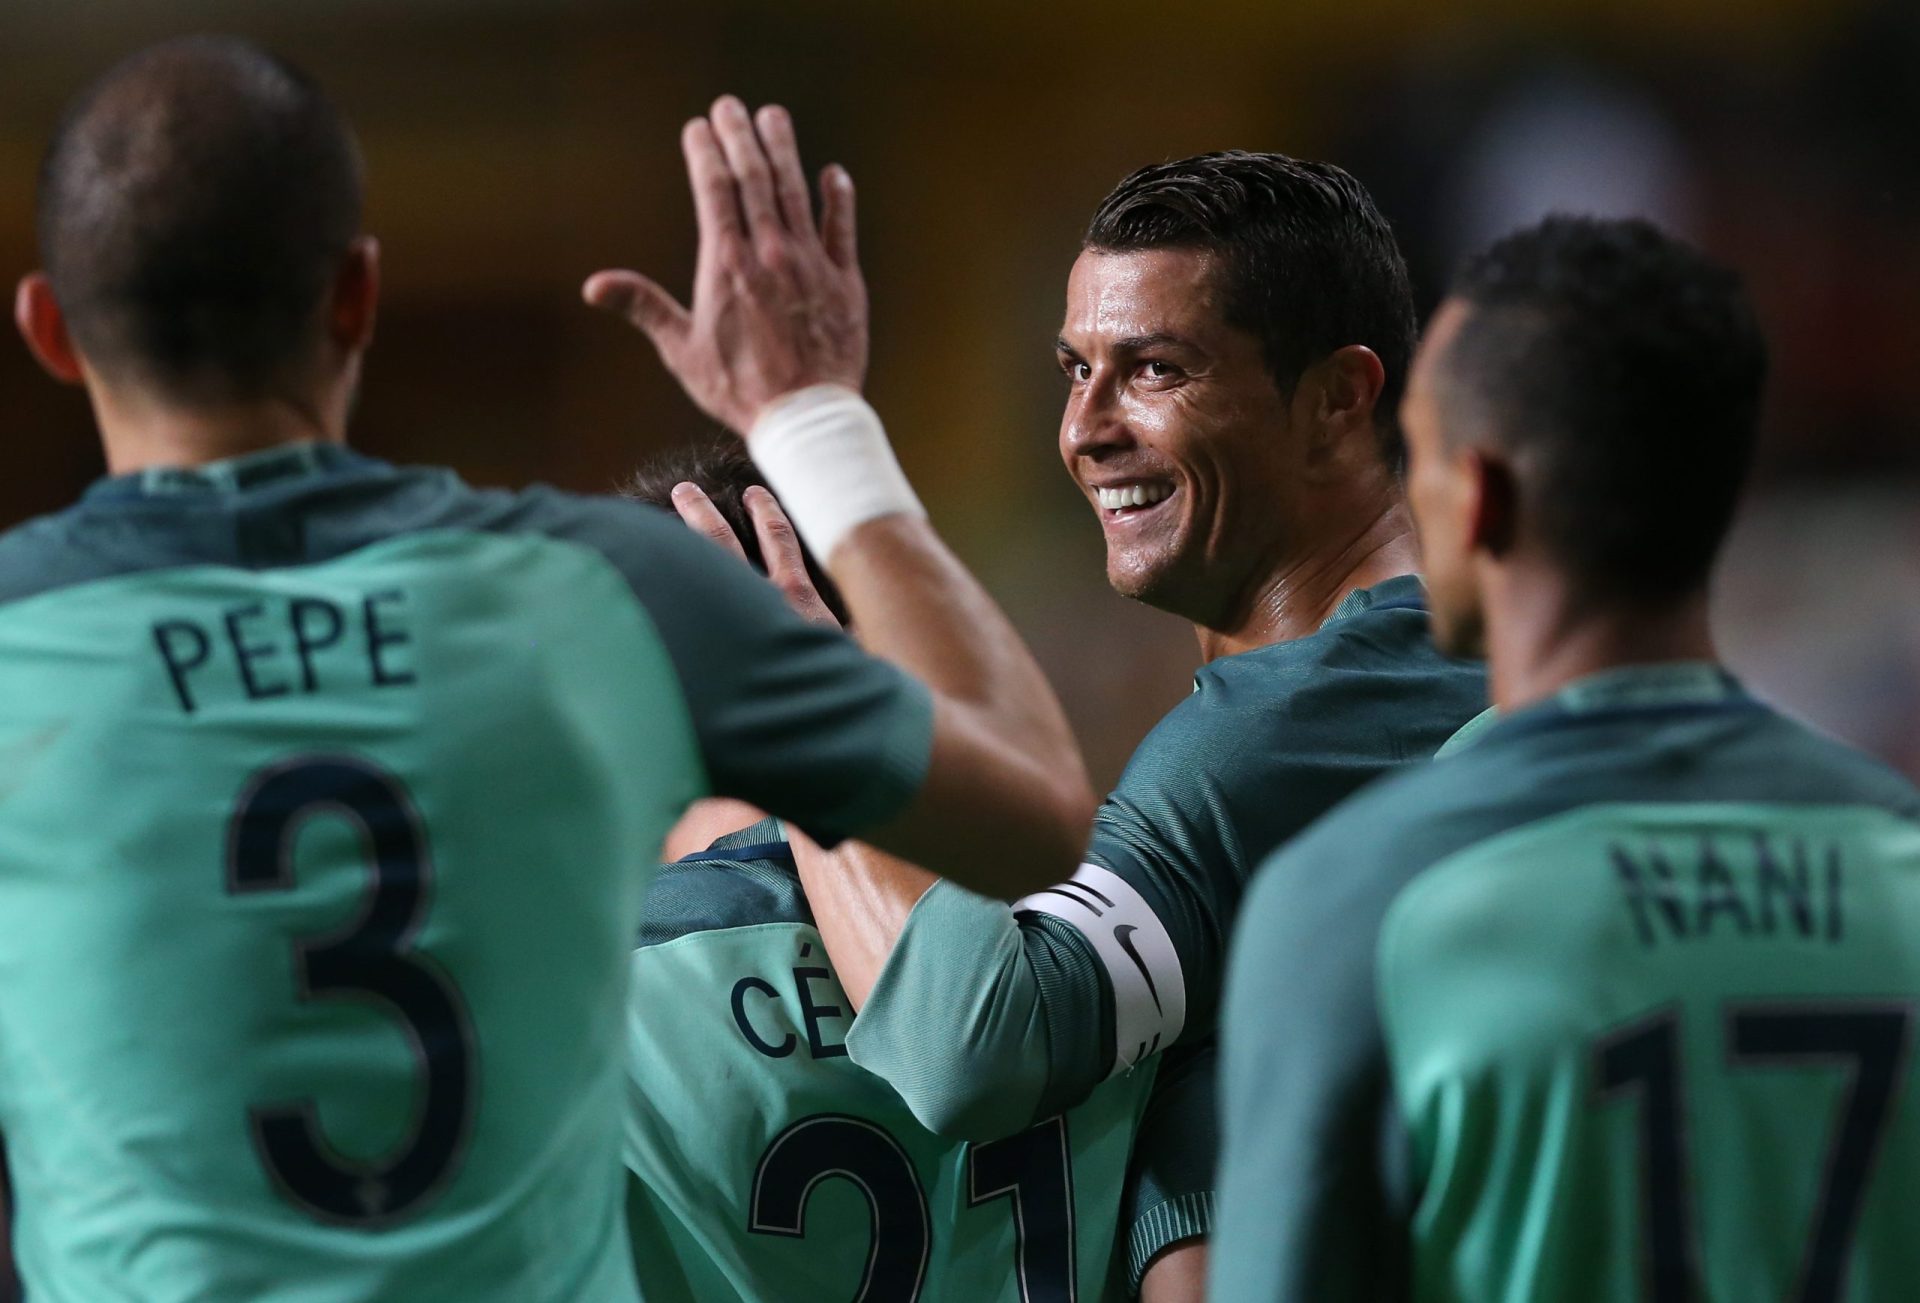 Seleção: Ronaldo marcou, mas a noite foi da Bélgica